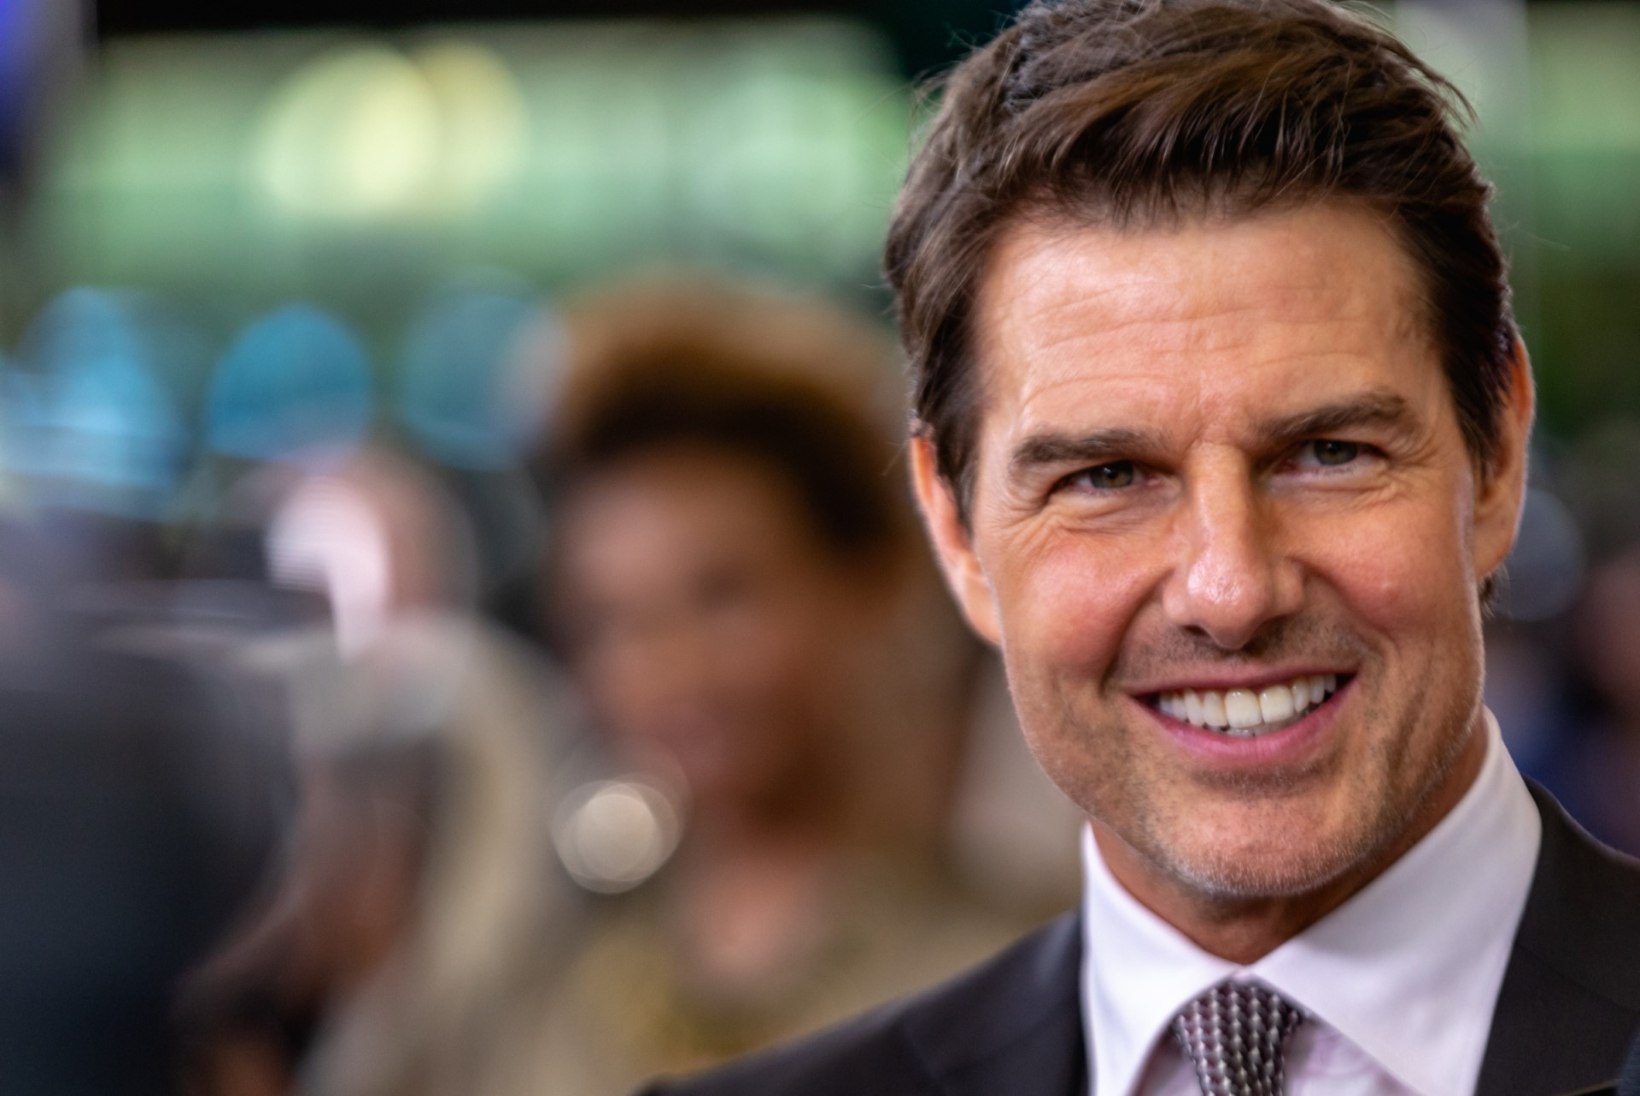 ÕUDNE VAATEPILT! Vaata kaadreid sellest, kuidas Tom Cruise filmivõtetel pahkluu murdis